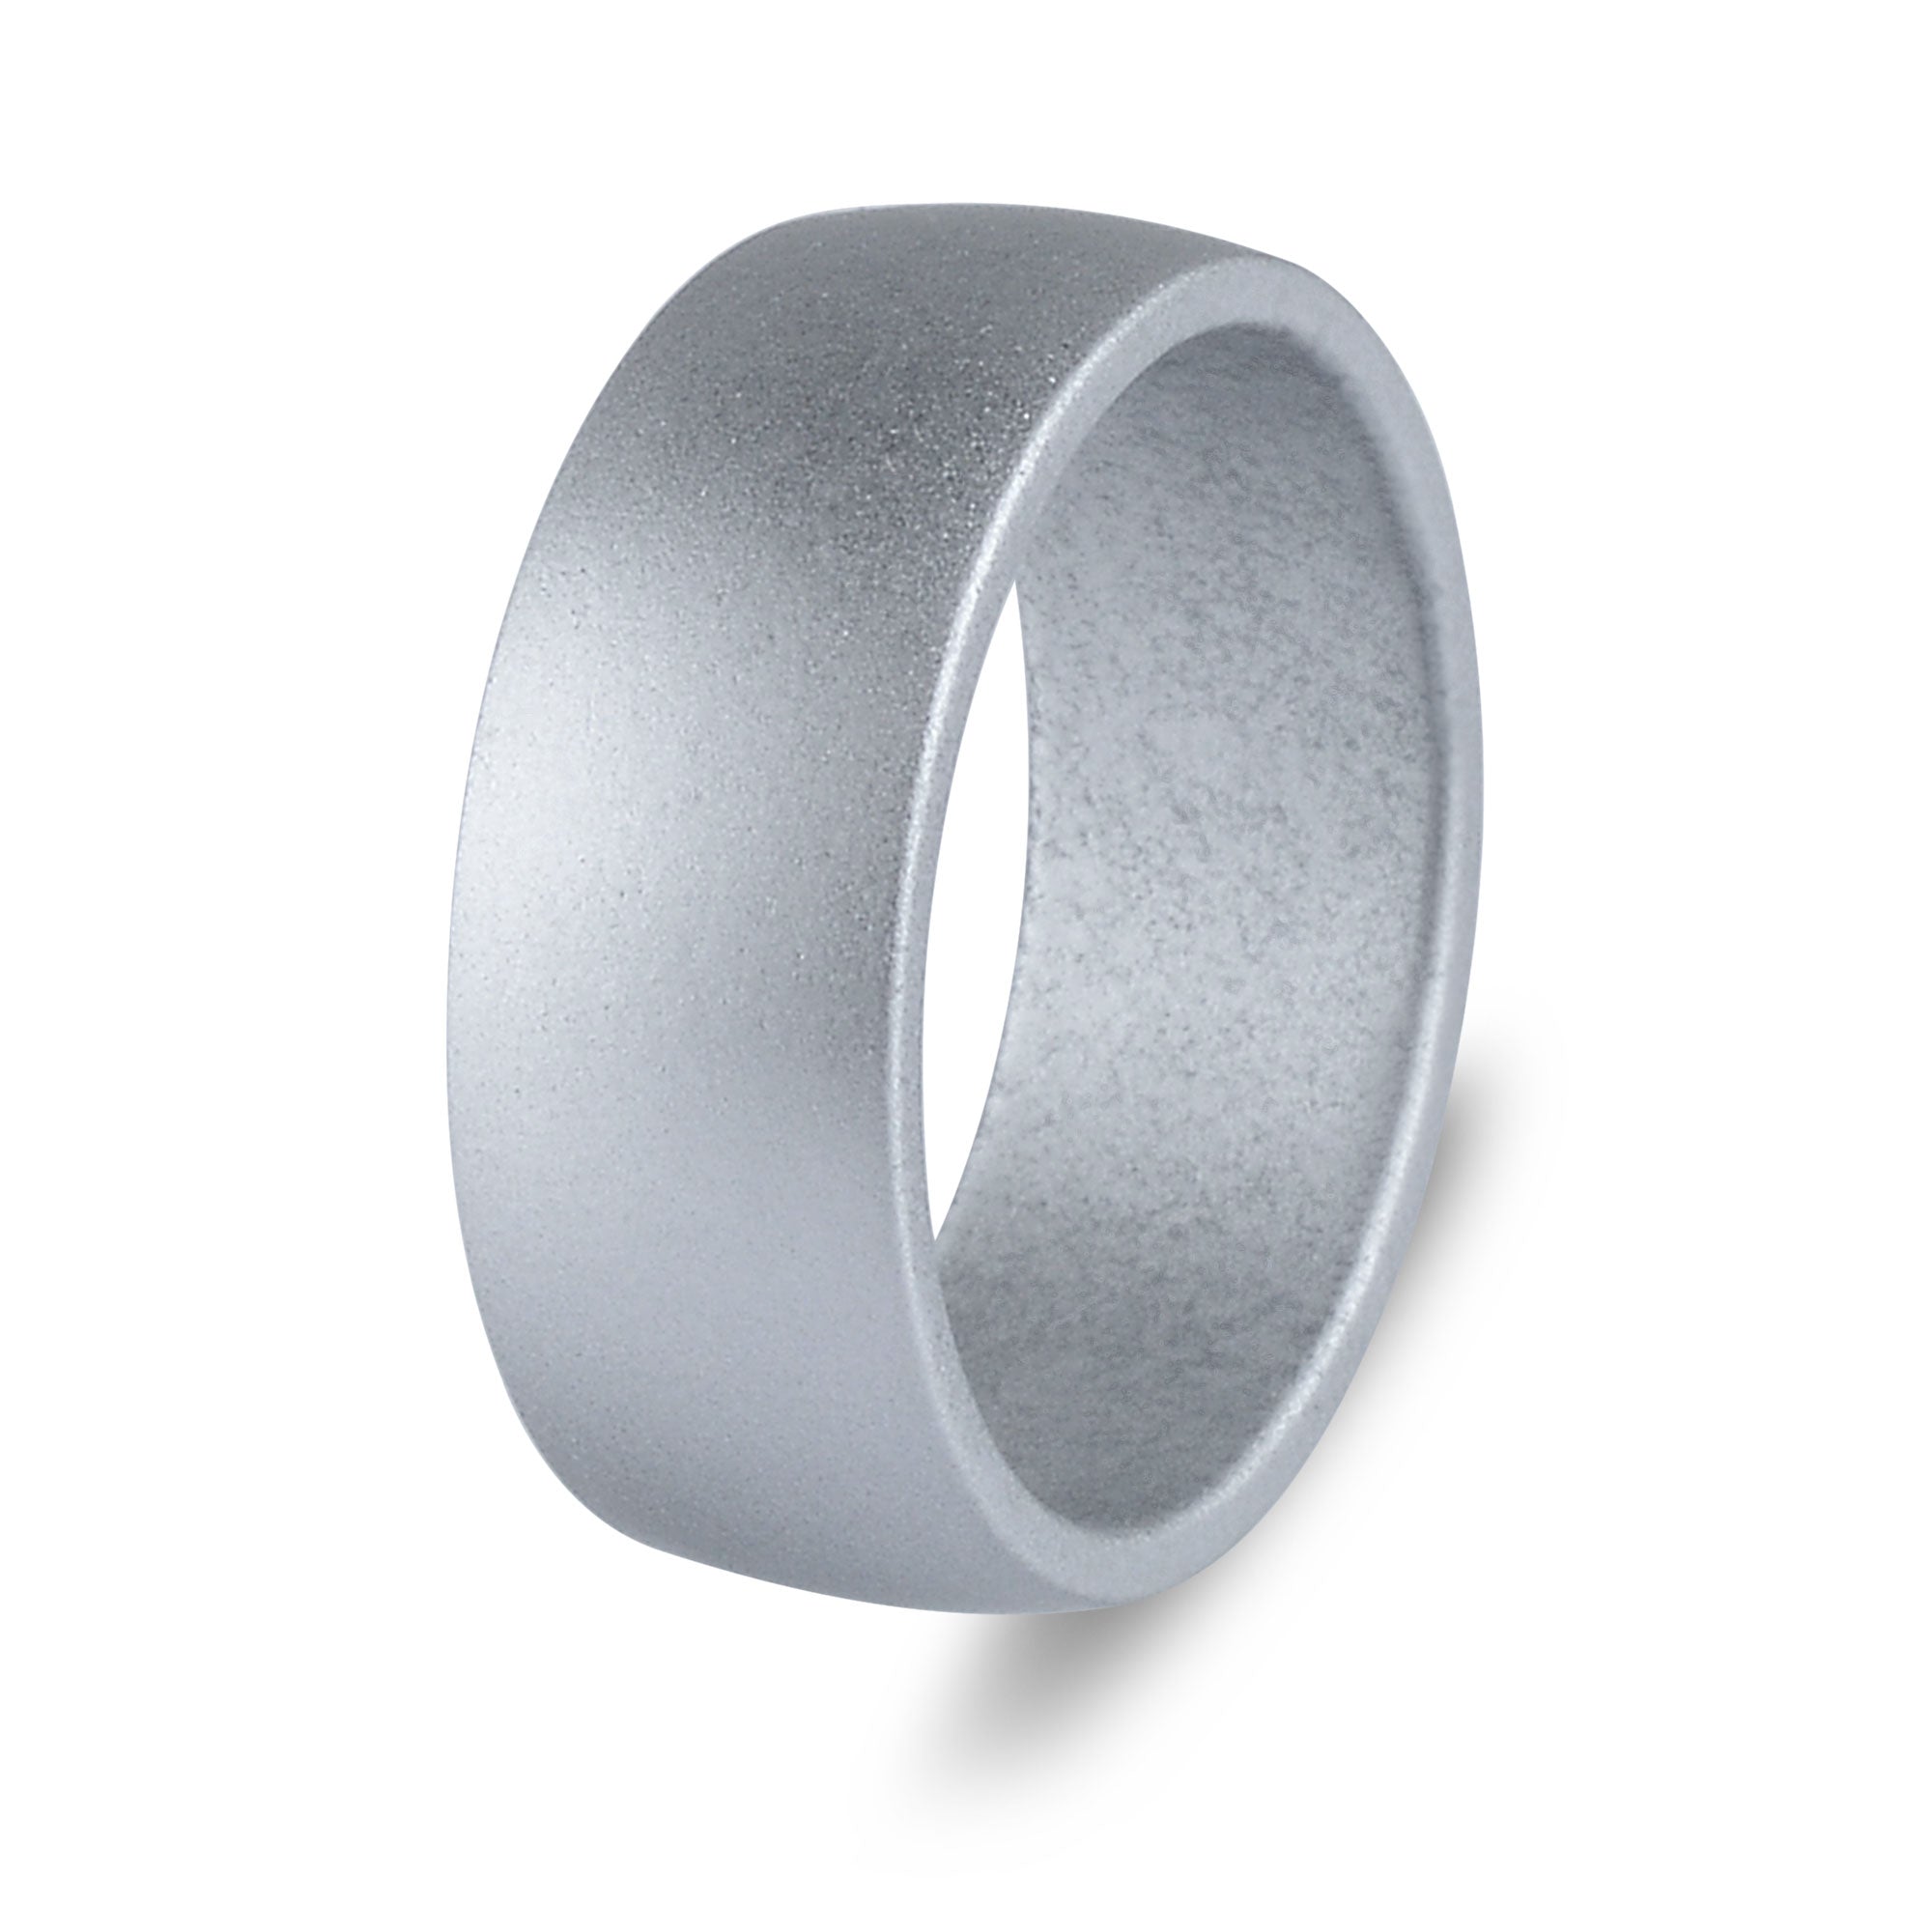 The Platinum - Silicone Ring